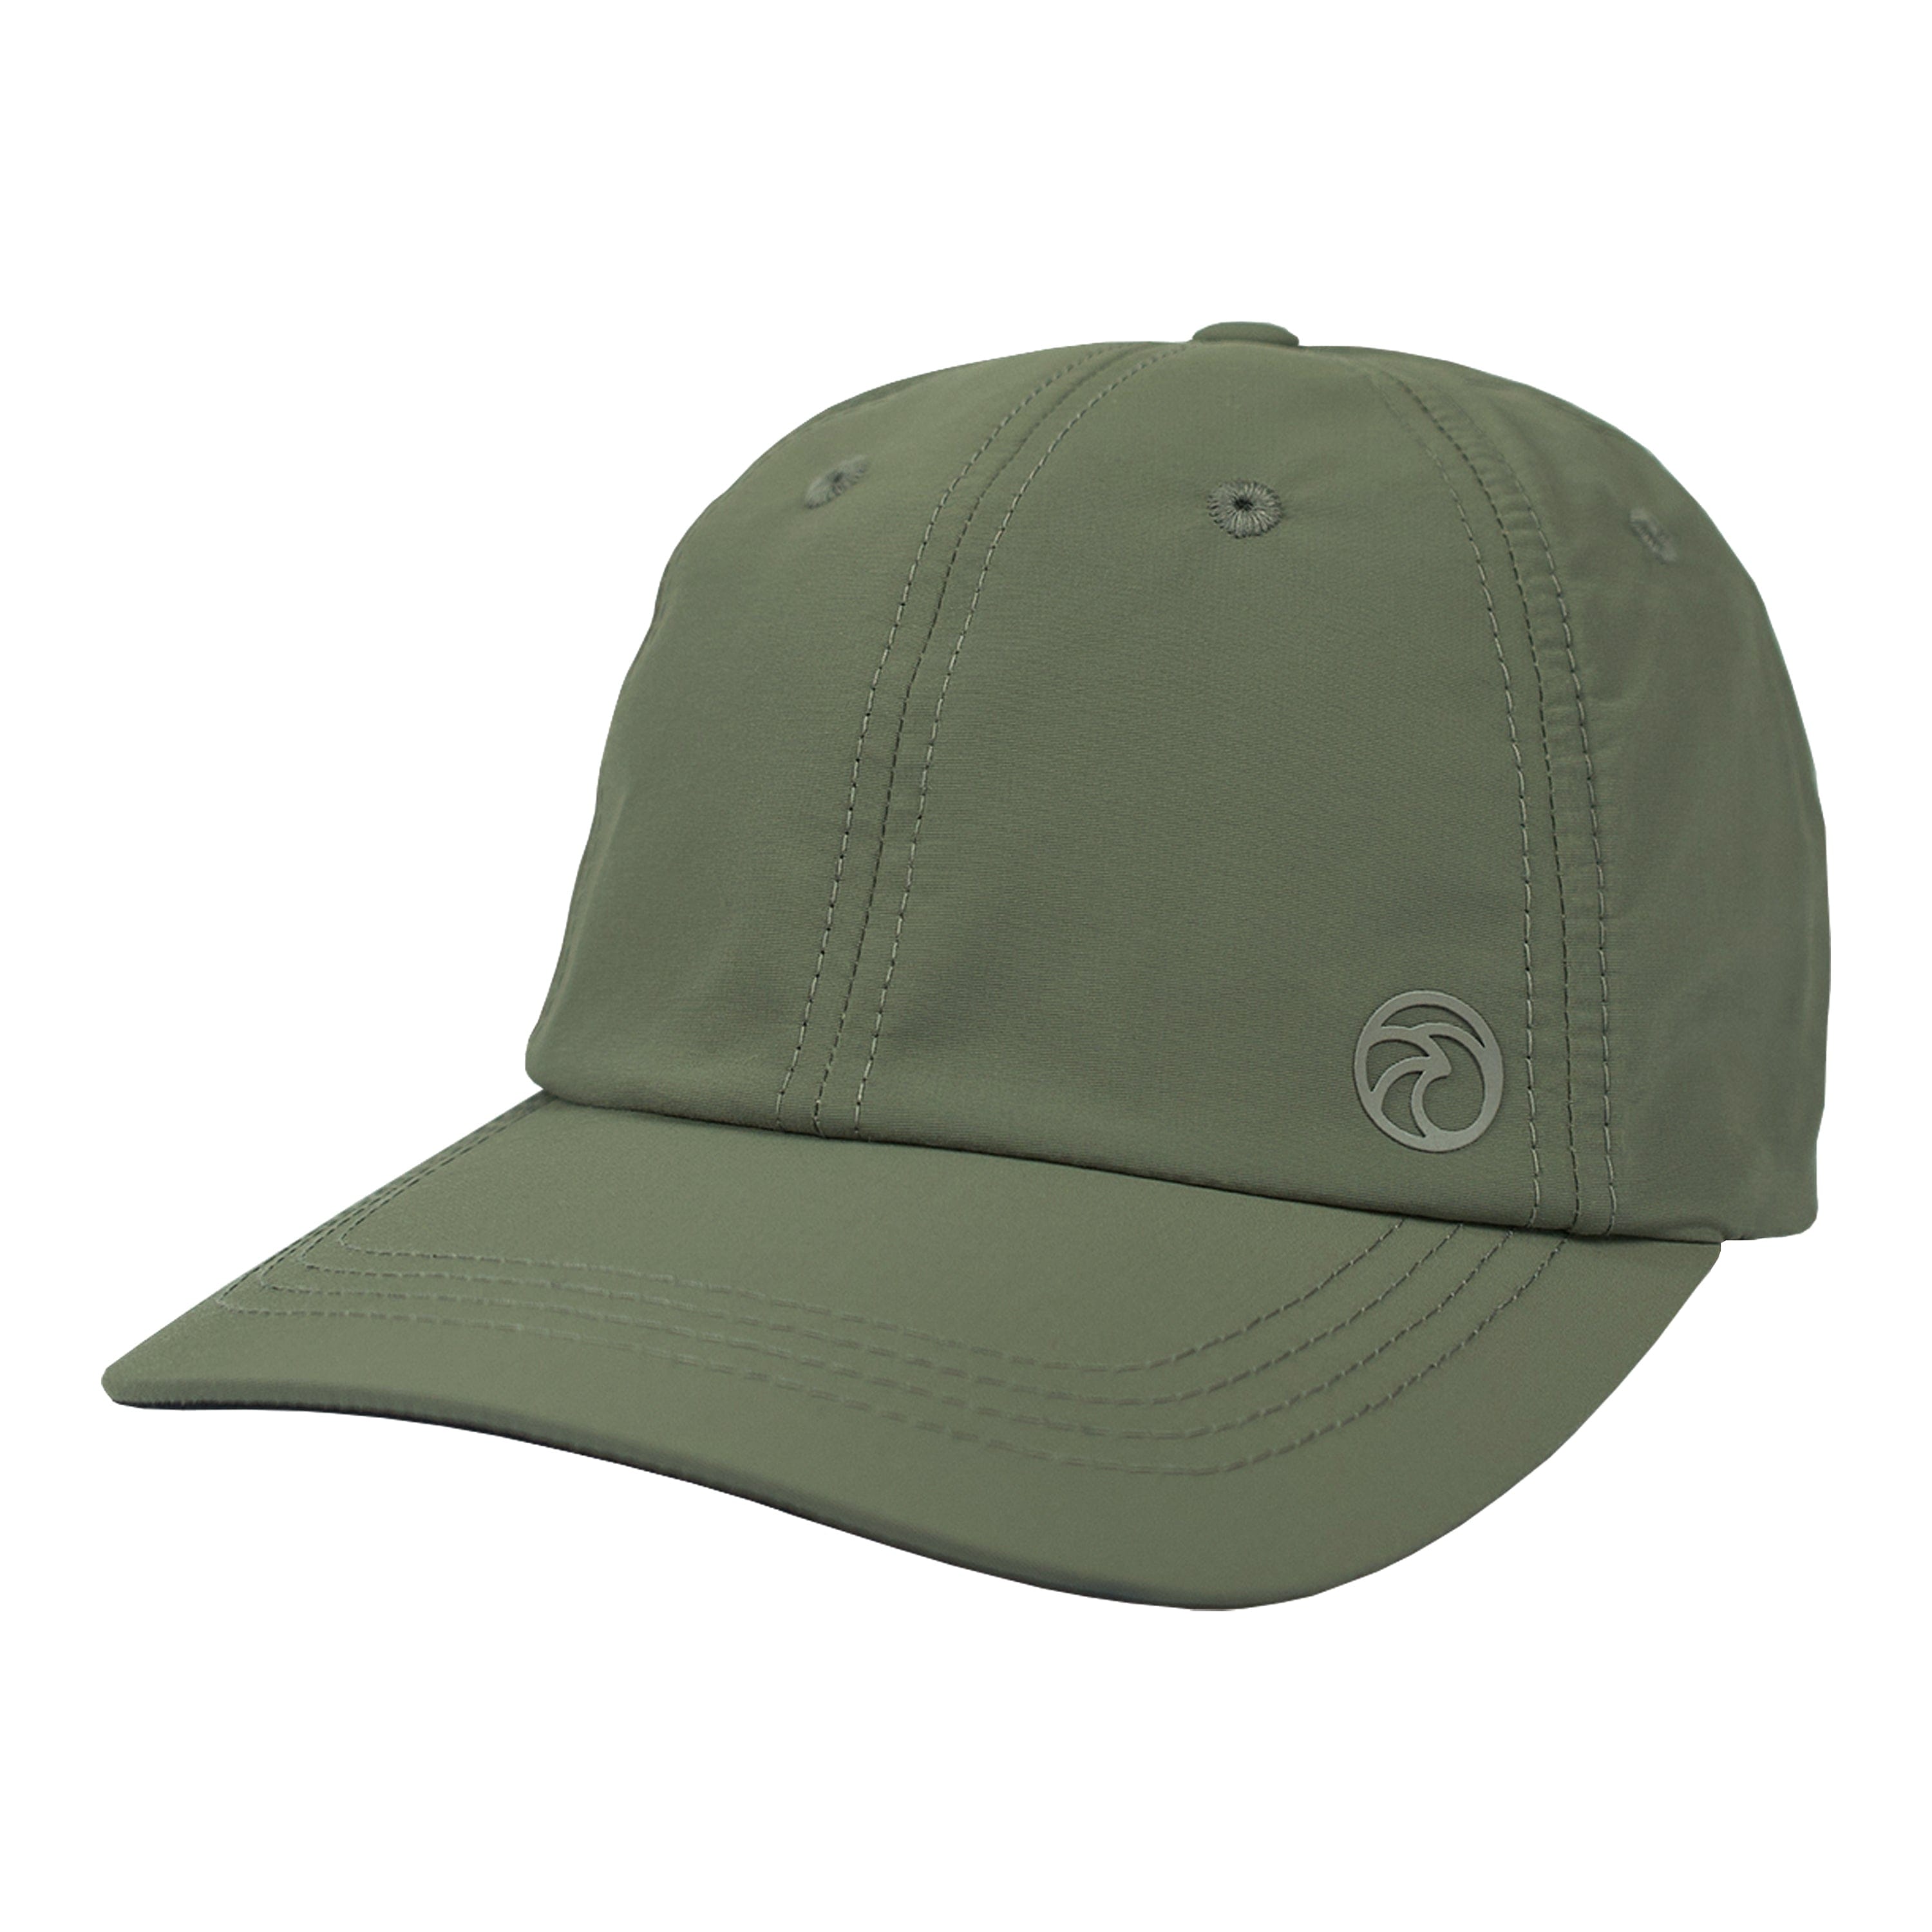 Vapor Elemental Wear Structured Performance Hat